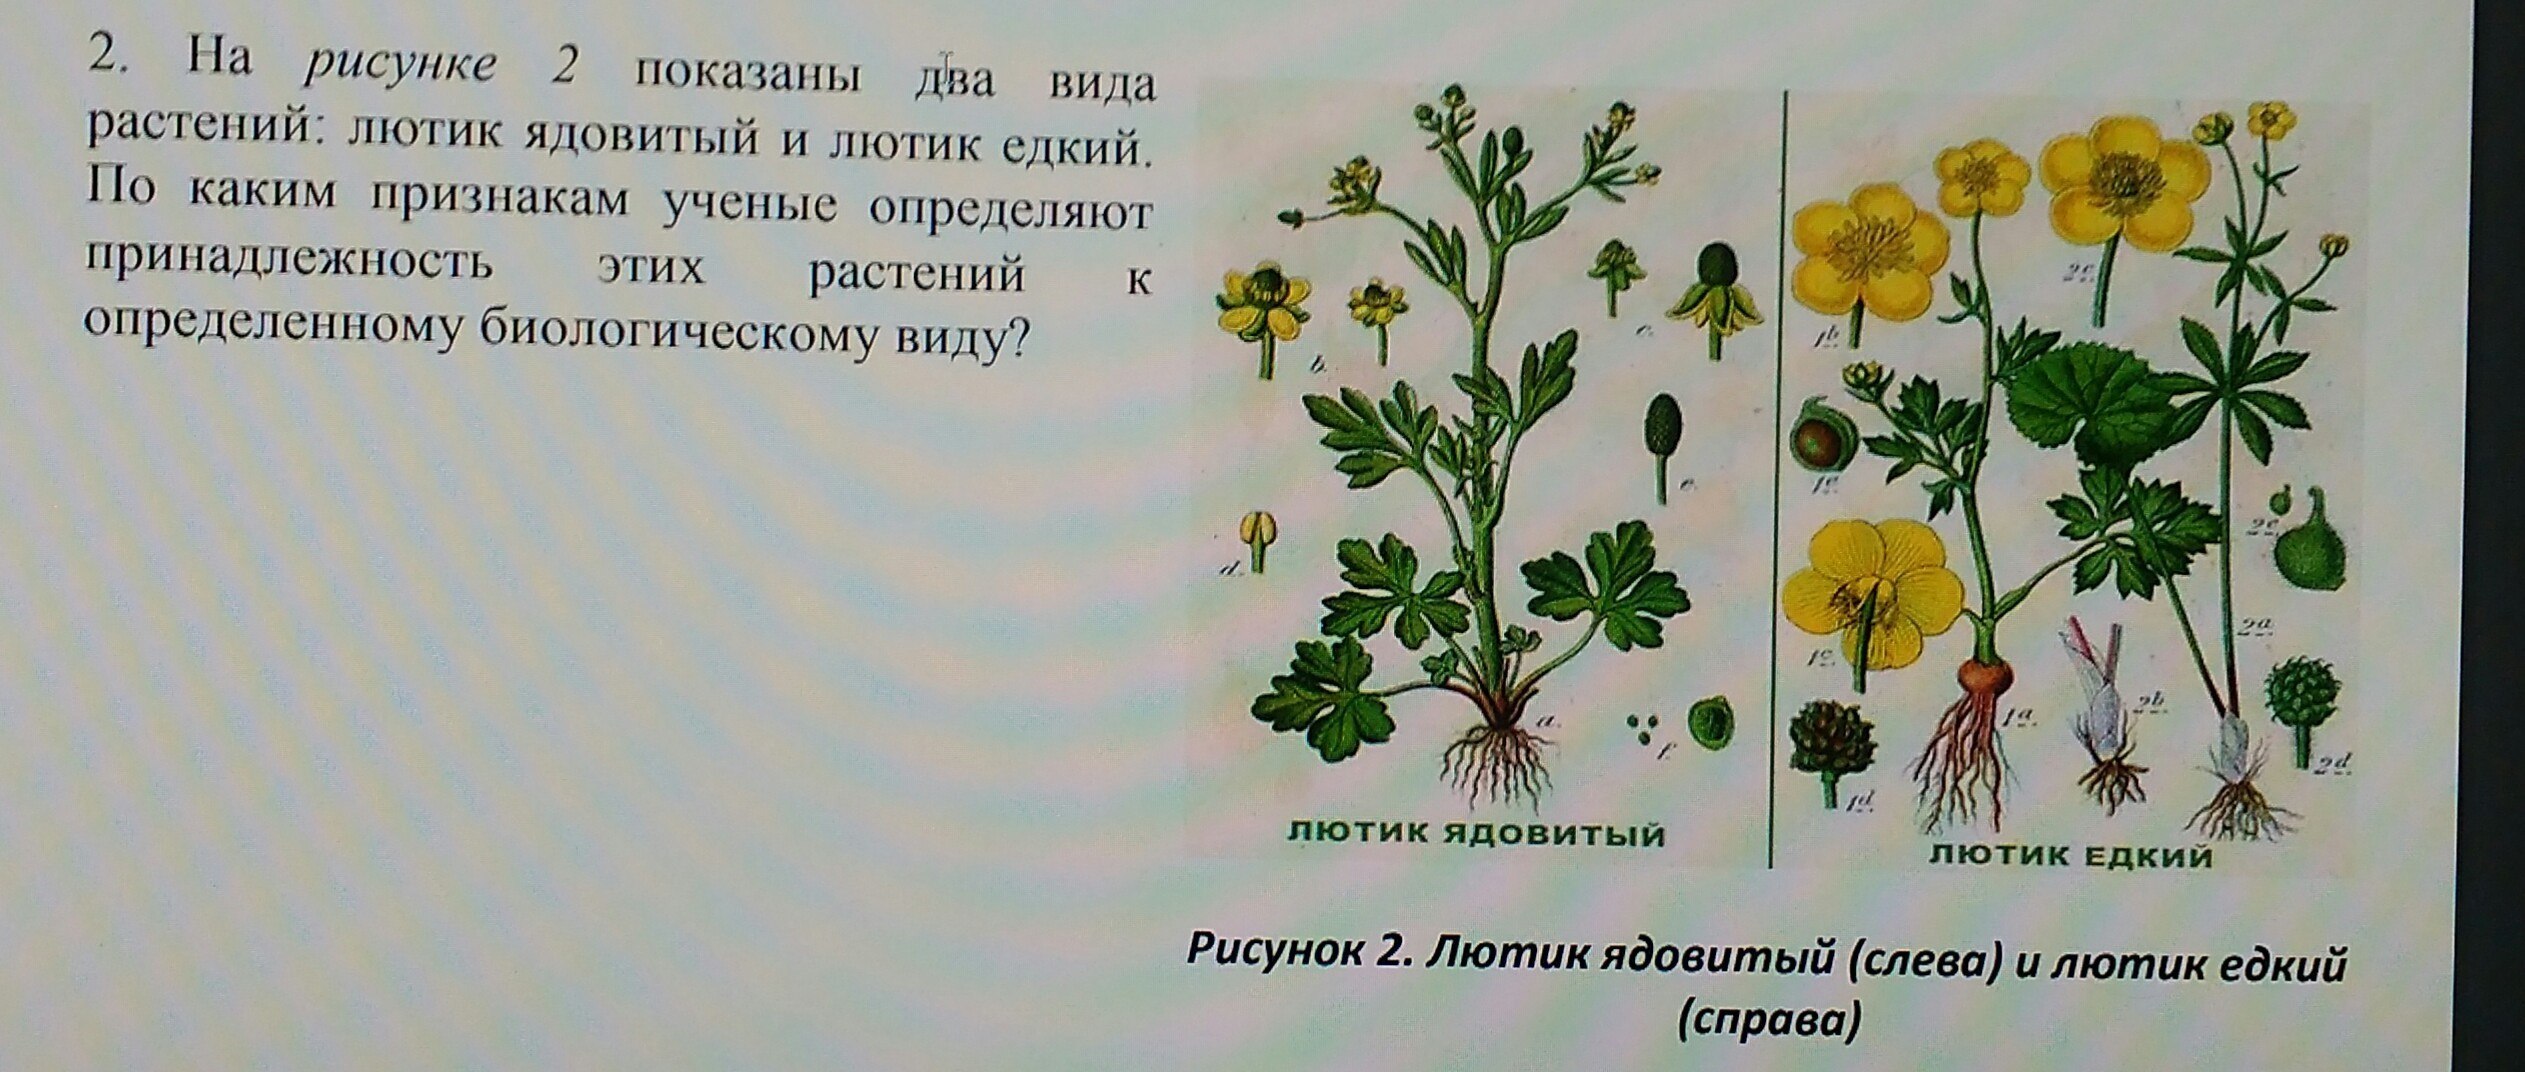 1 вид растения